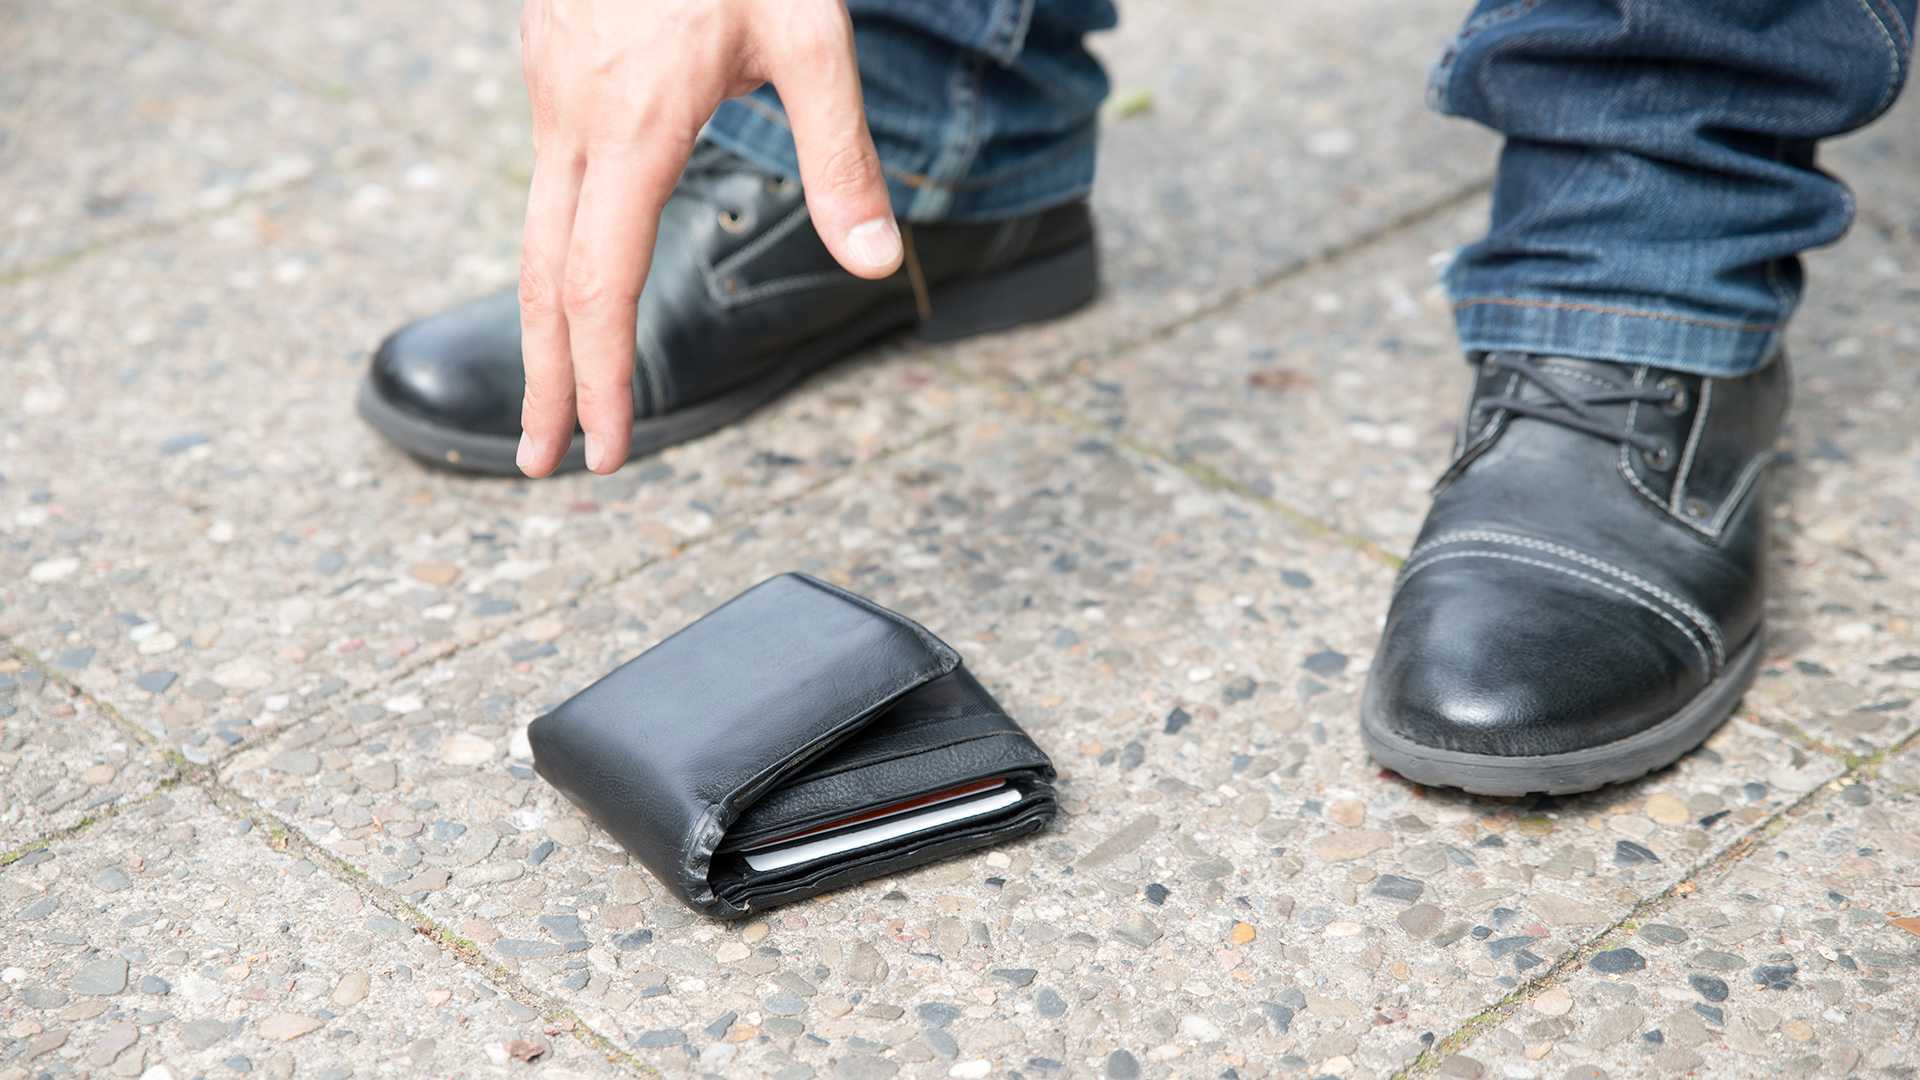 Вернули телефон потерянный. Человек нашел деньги на улице. Утерян кошелек. Утерянные вещи. Найден кошелек.